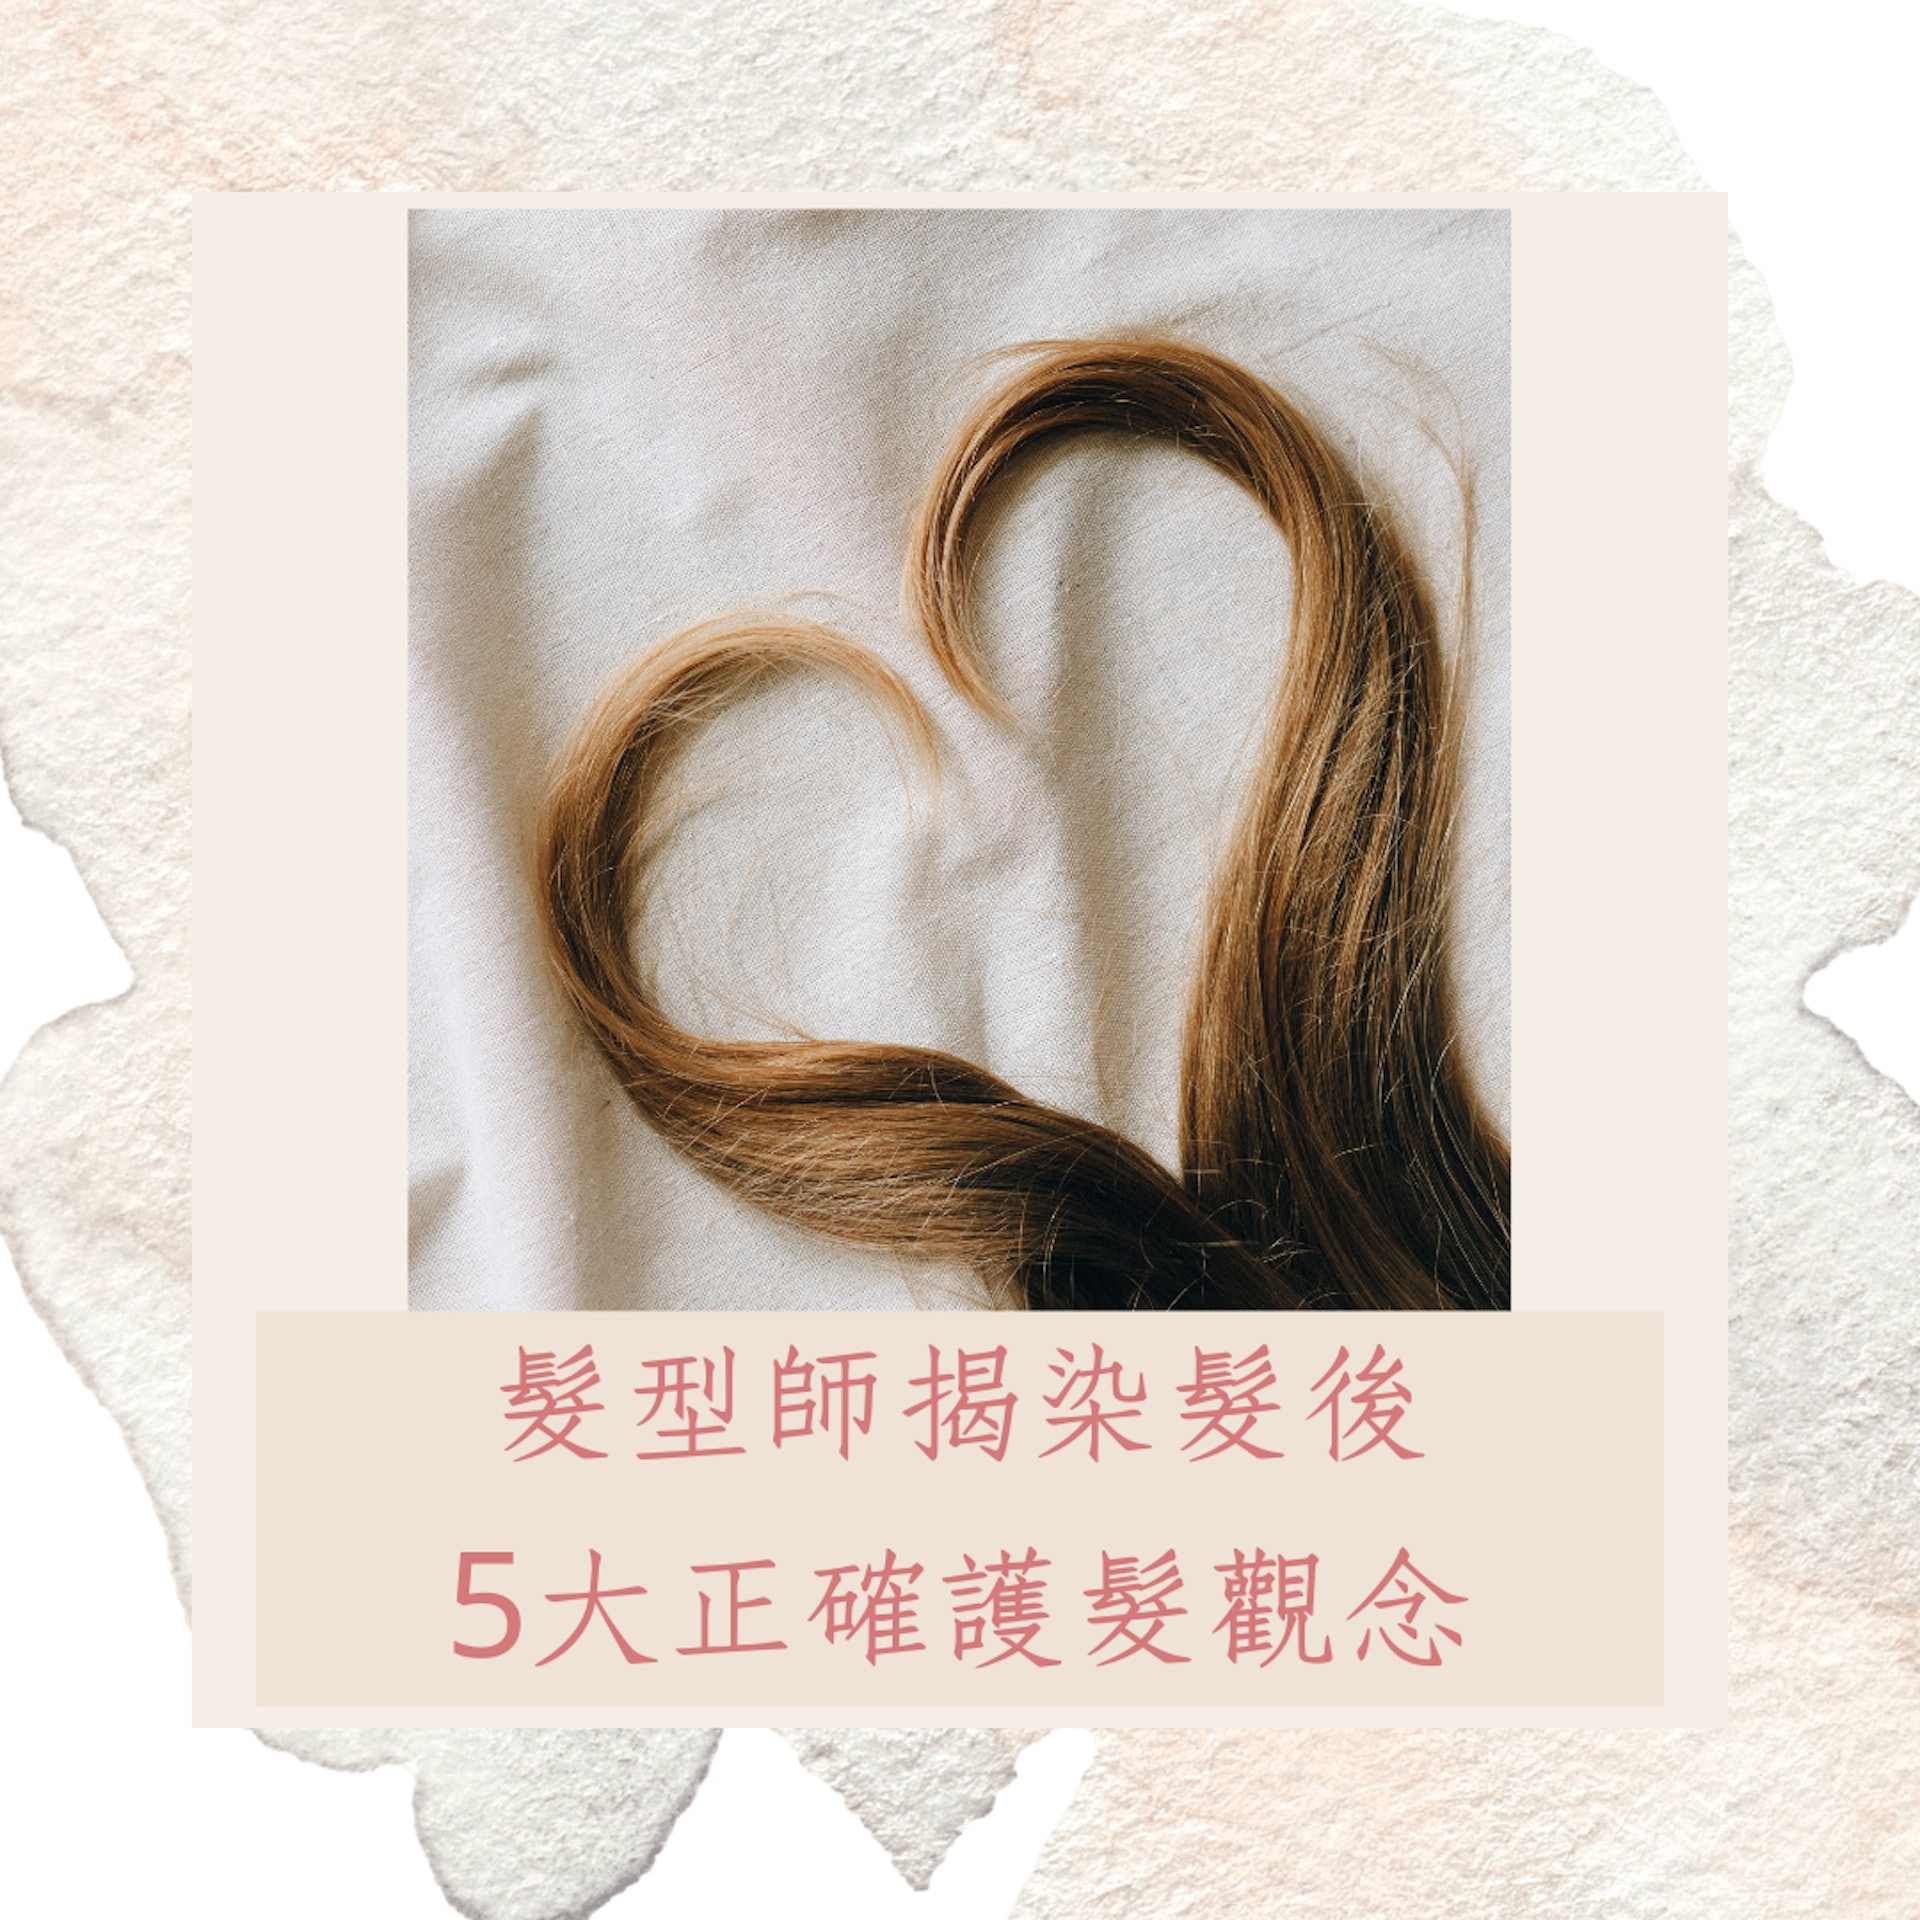 髮型師揭染髮後5大正確護髮觀念（01製圖）